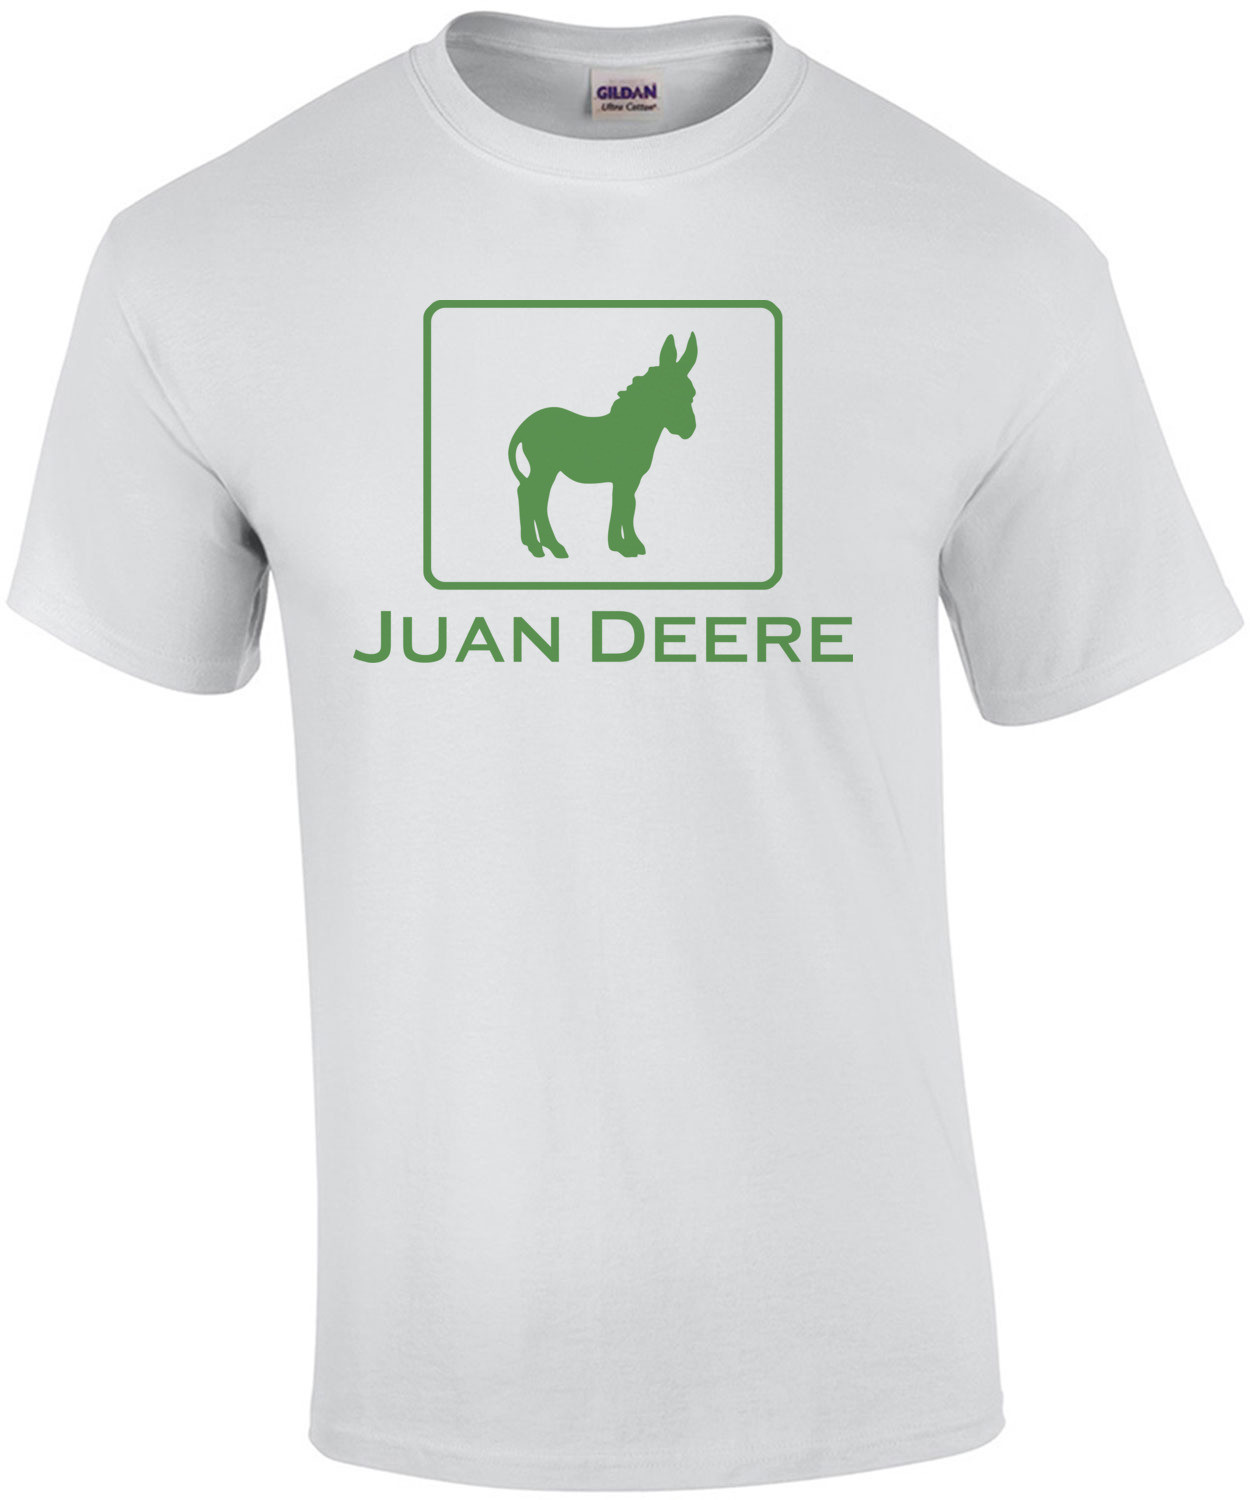 Juan Deere T-Shirt